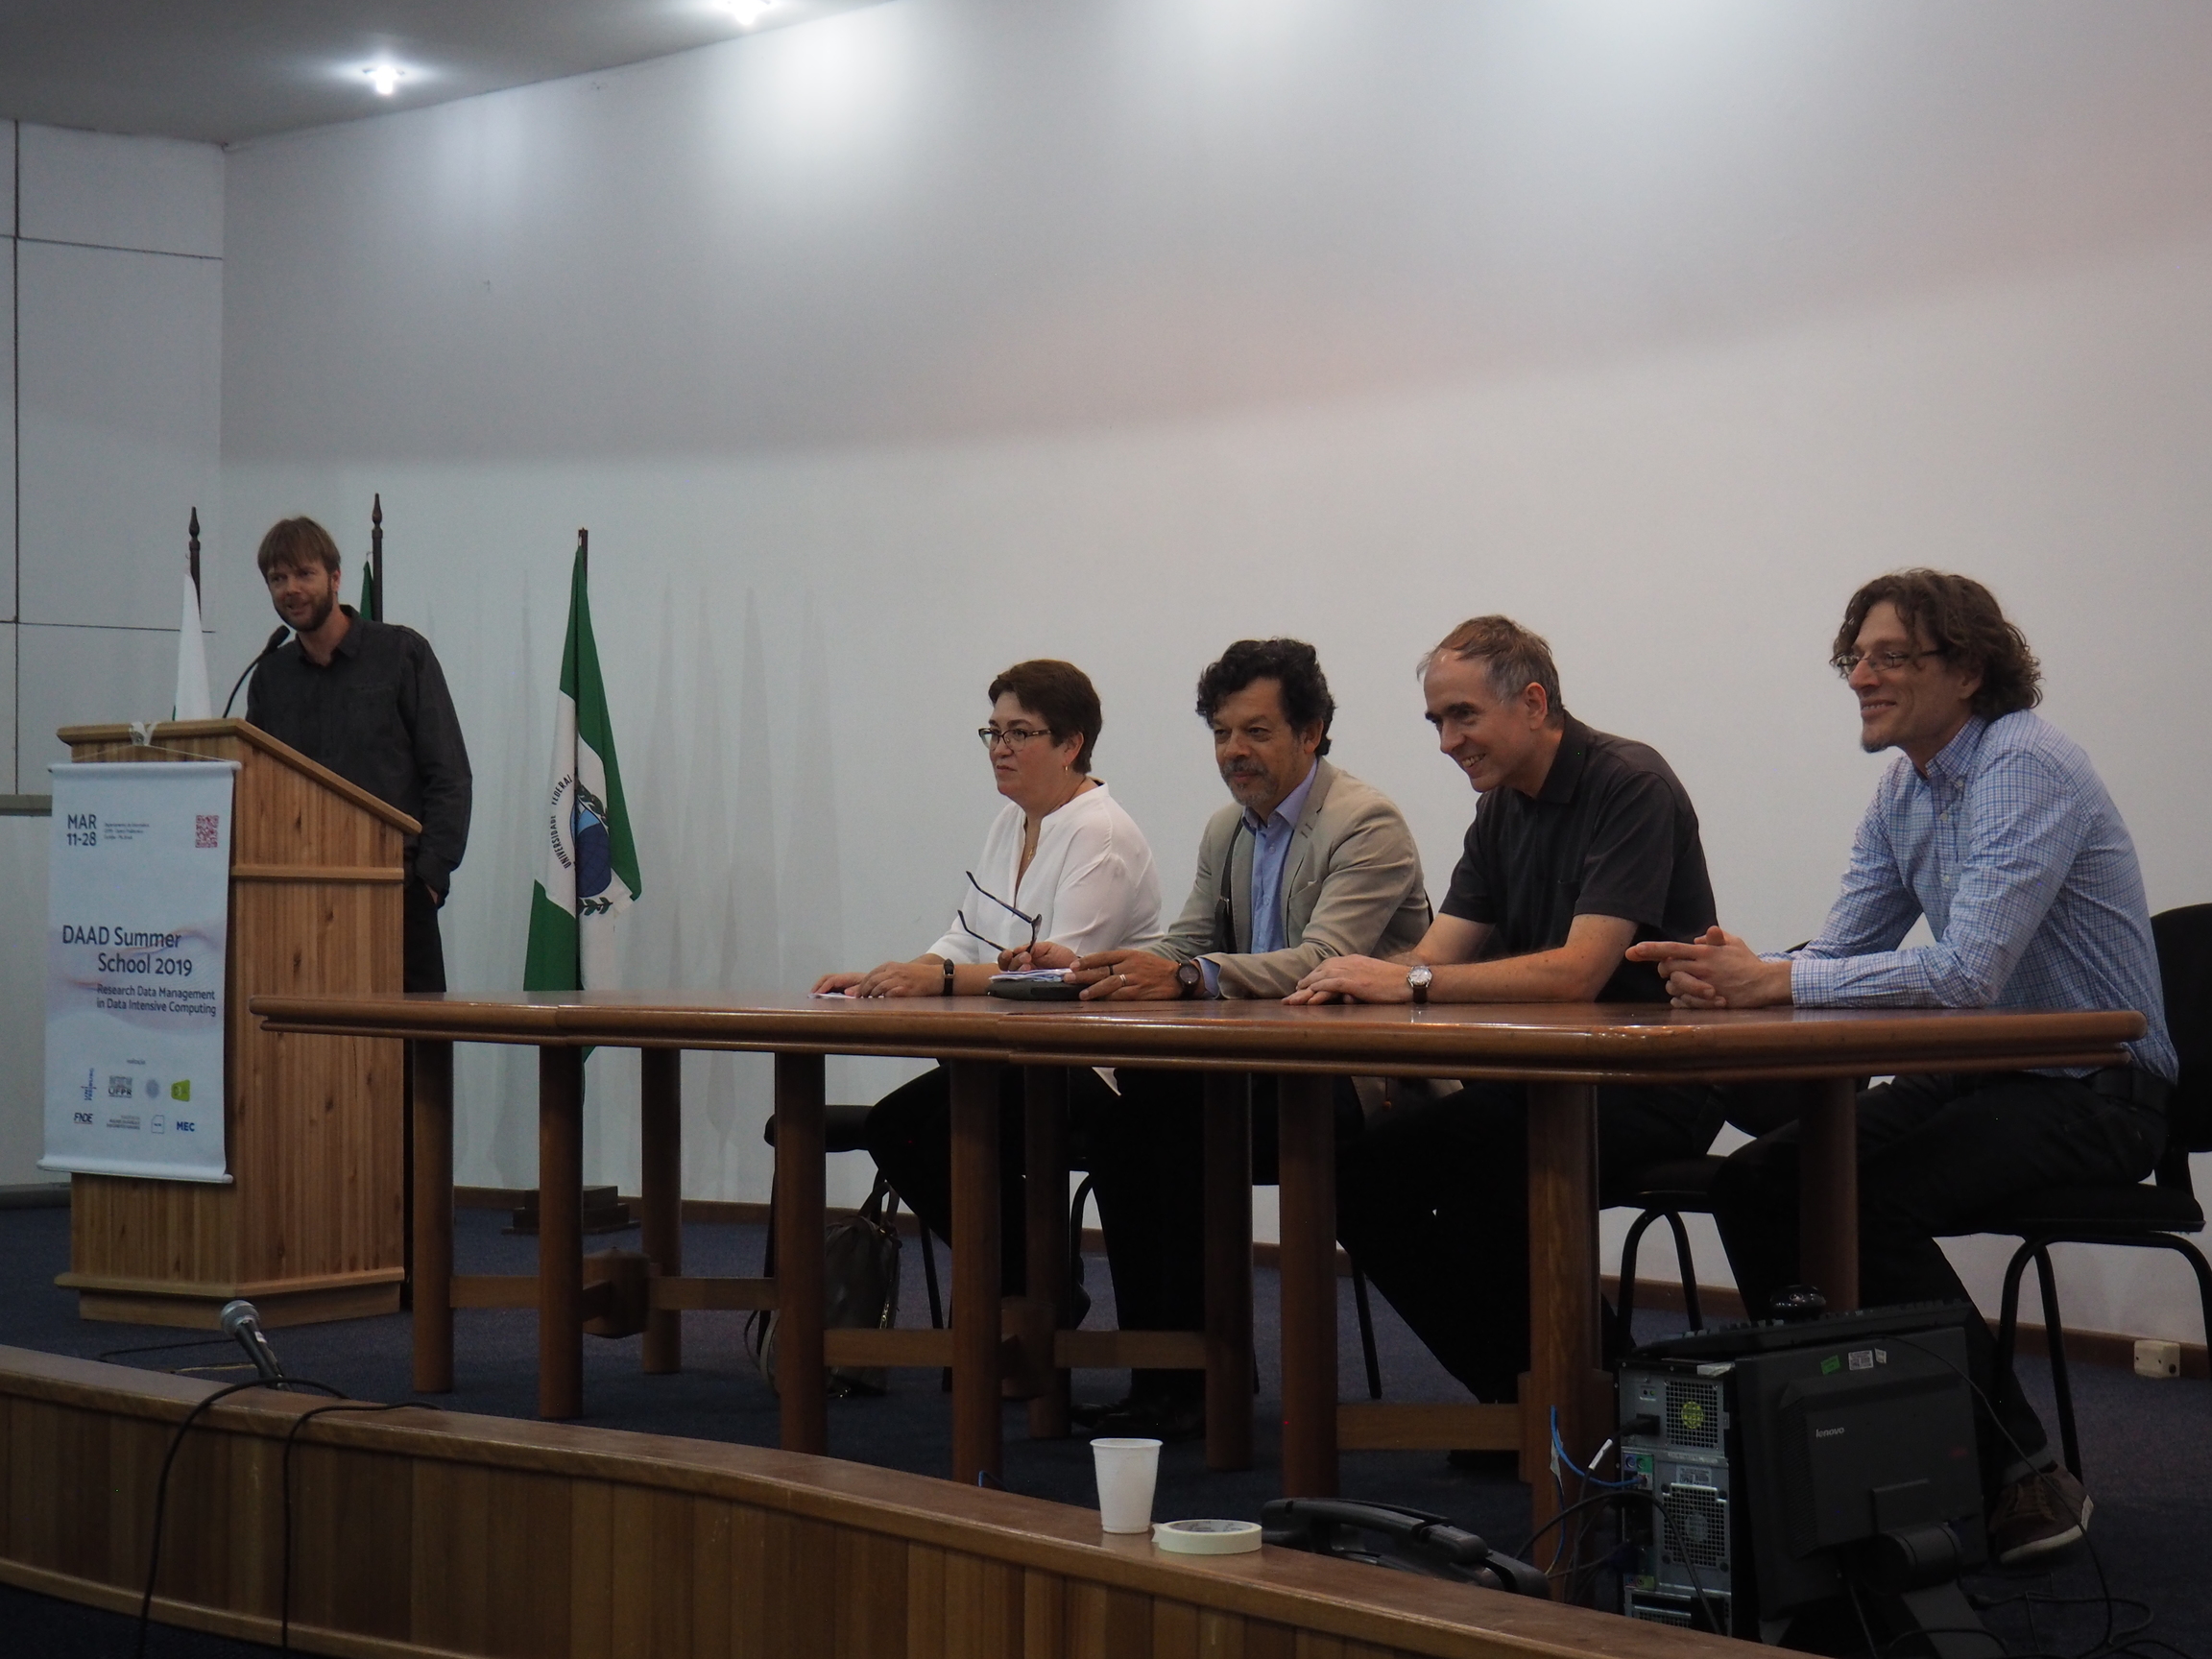 DAAD Summer School zu "Research Data Management" in Curitiba/Brasilien erfolgreich abgeschlossen